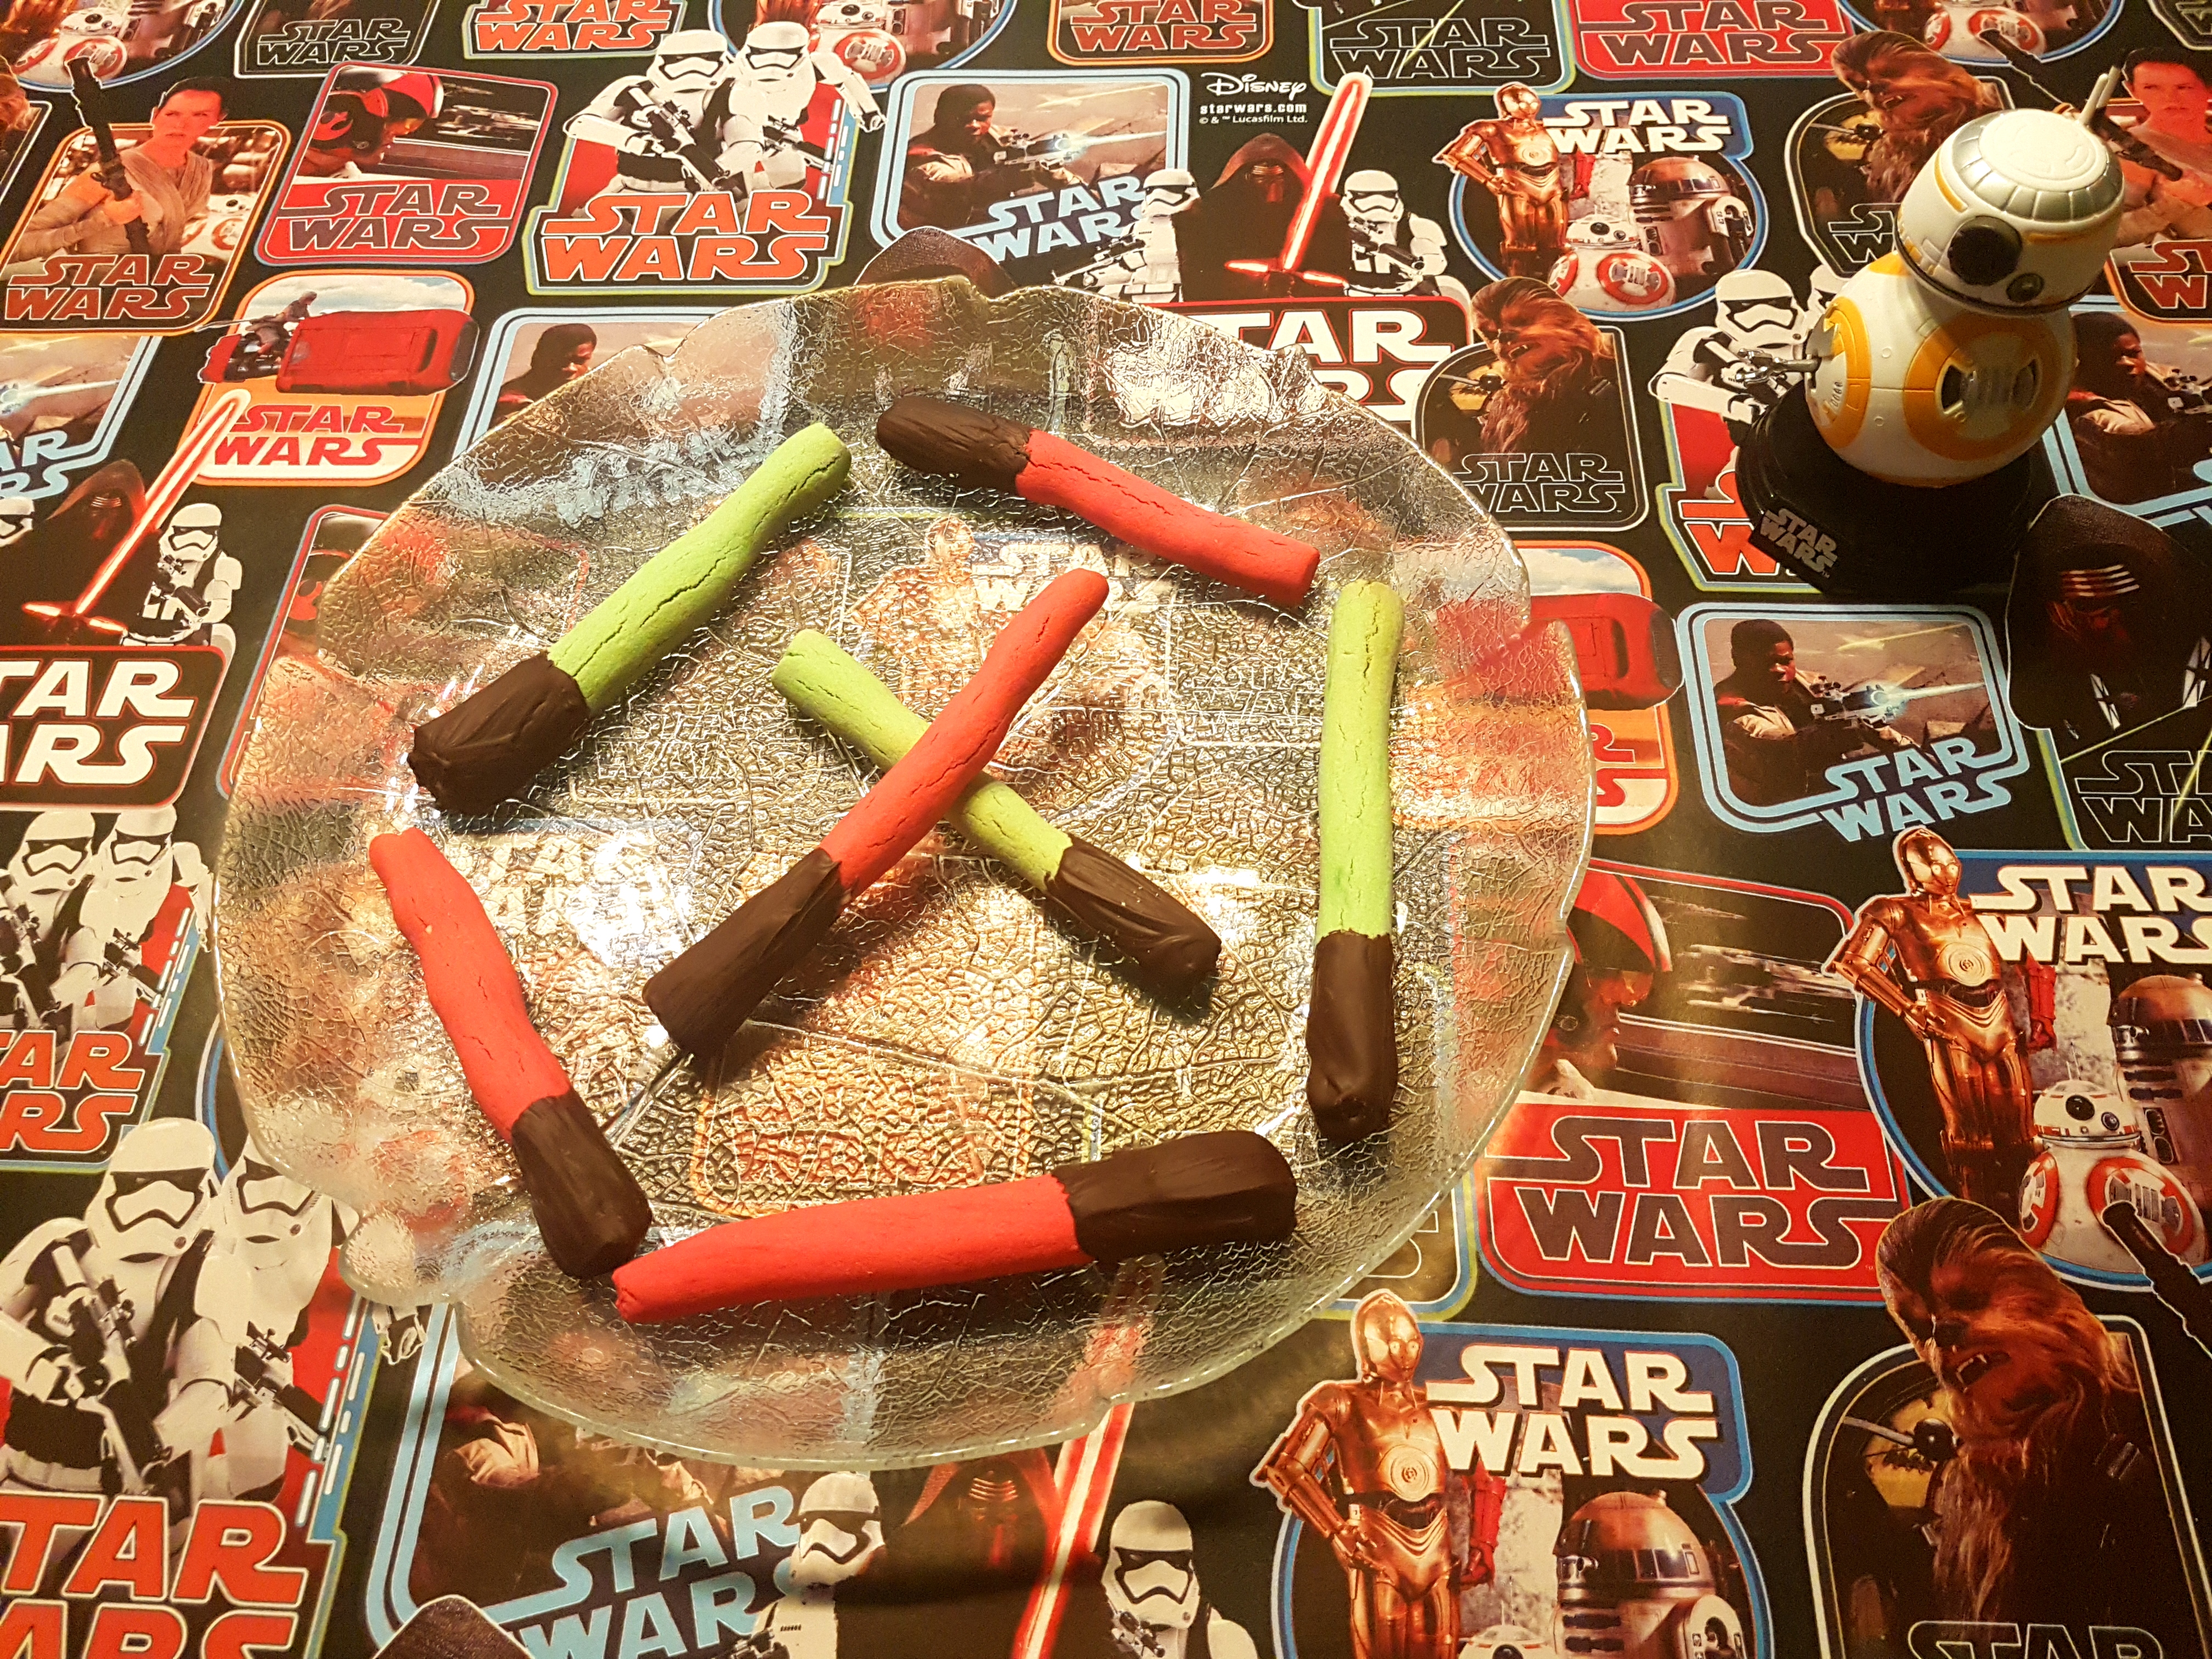 Fertige Lichtschwert-Kekse in grün und rot.